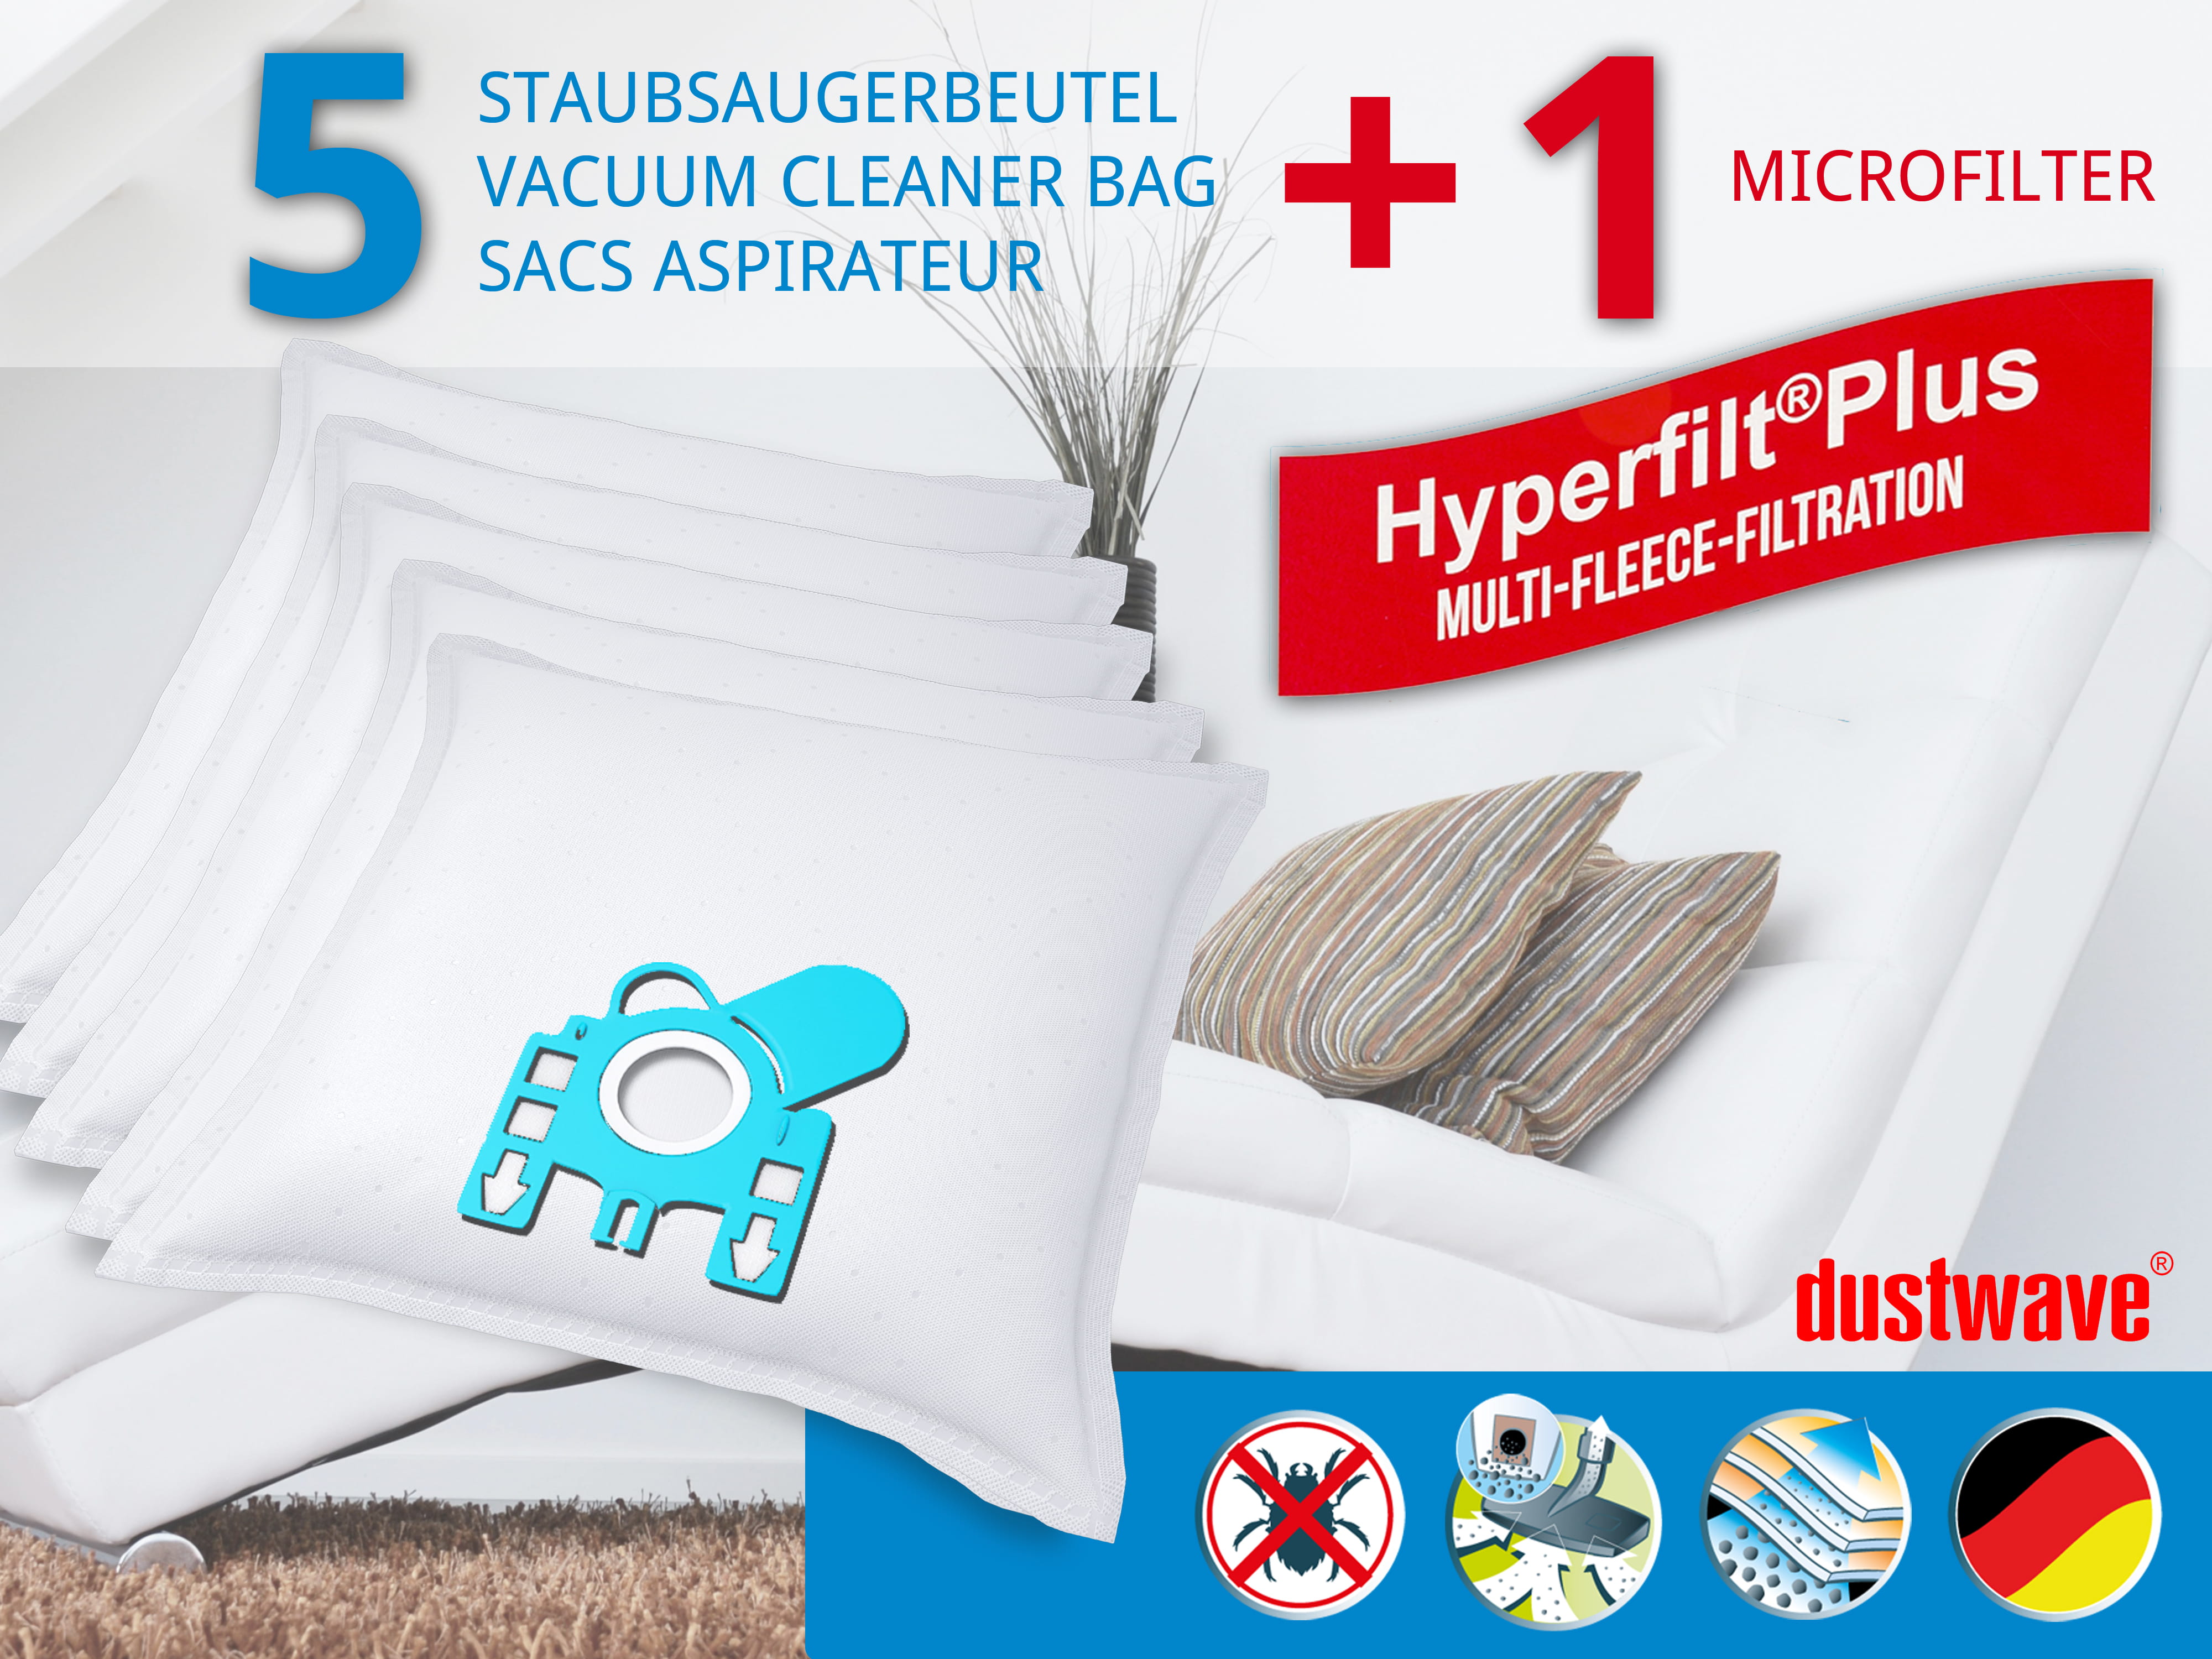 Dustwave® 5 Staubsaugerbeutel für Miele S401i / S 401 i - hocheffizient, mehrlagiges Mikrovlies mit Hygieneverschluss - Made in Germany